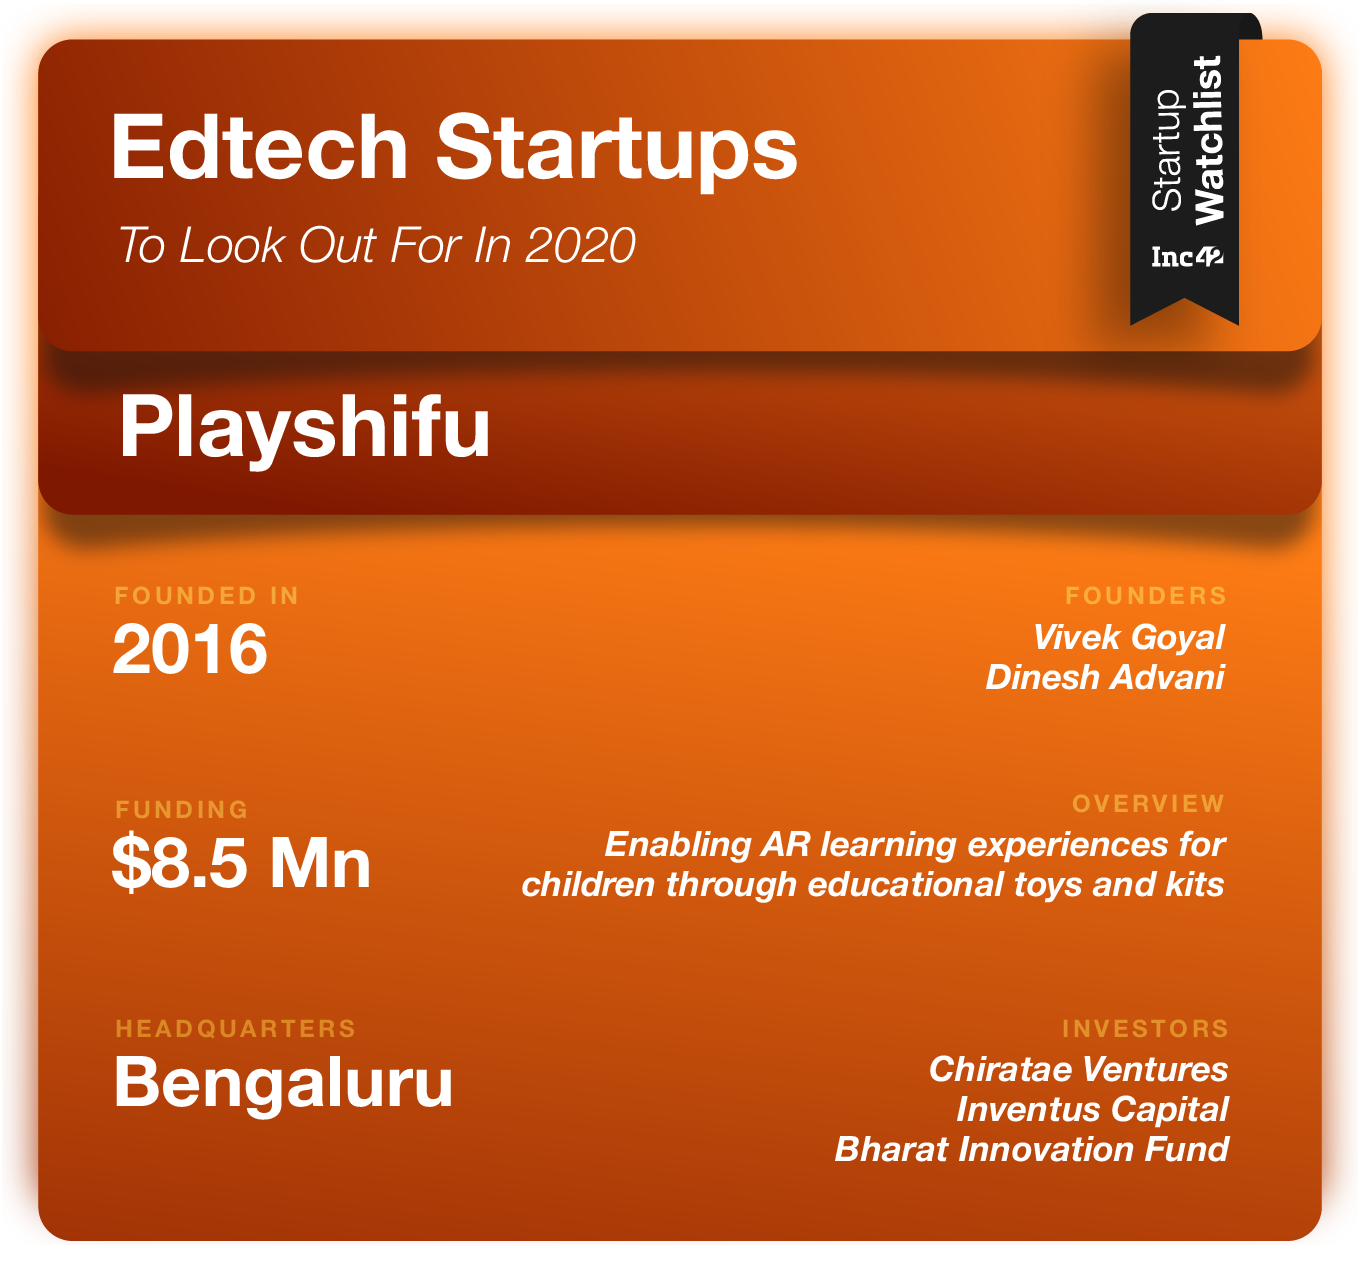 Edtech Startups 2020 Playshifu